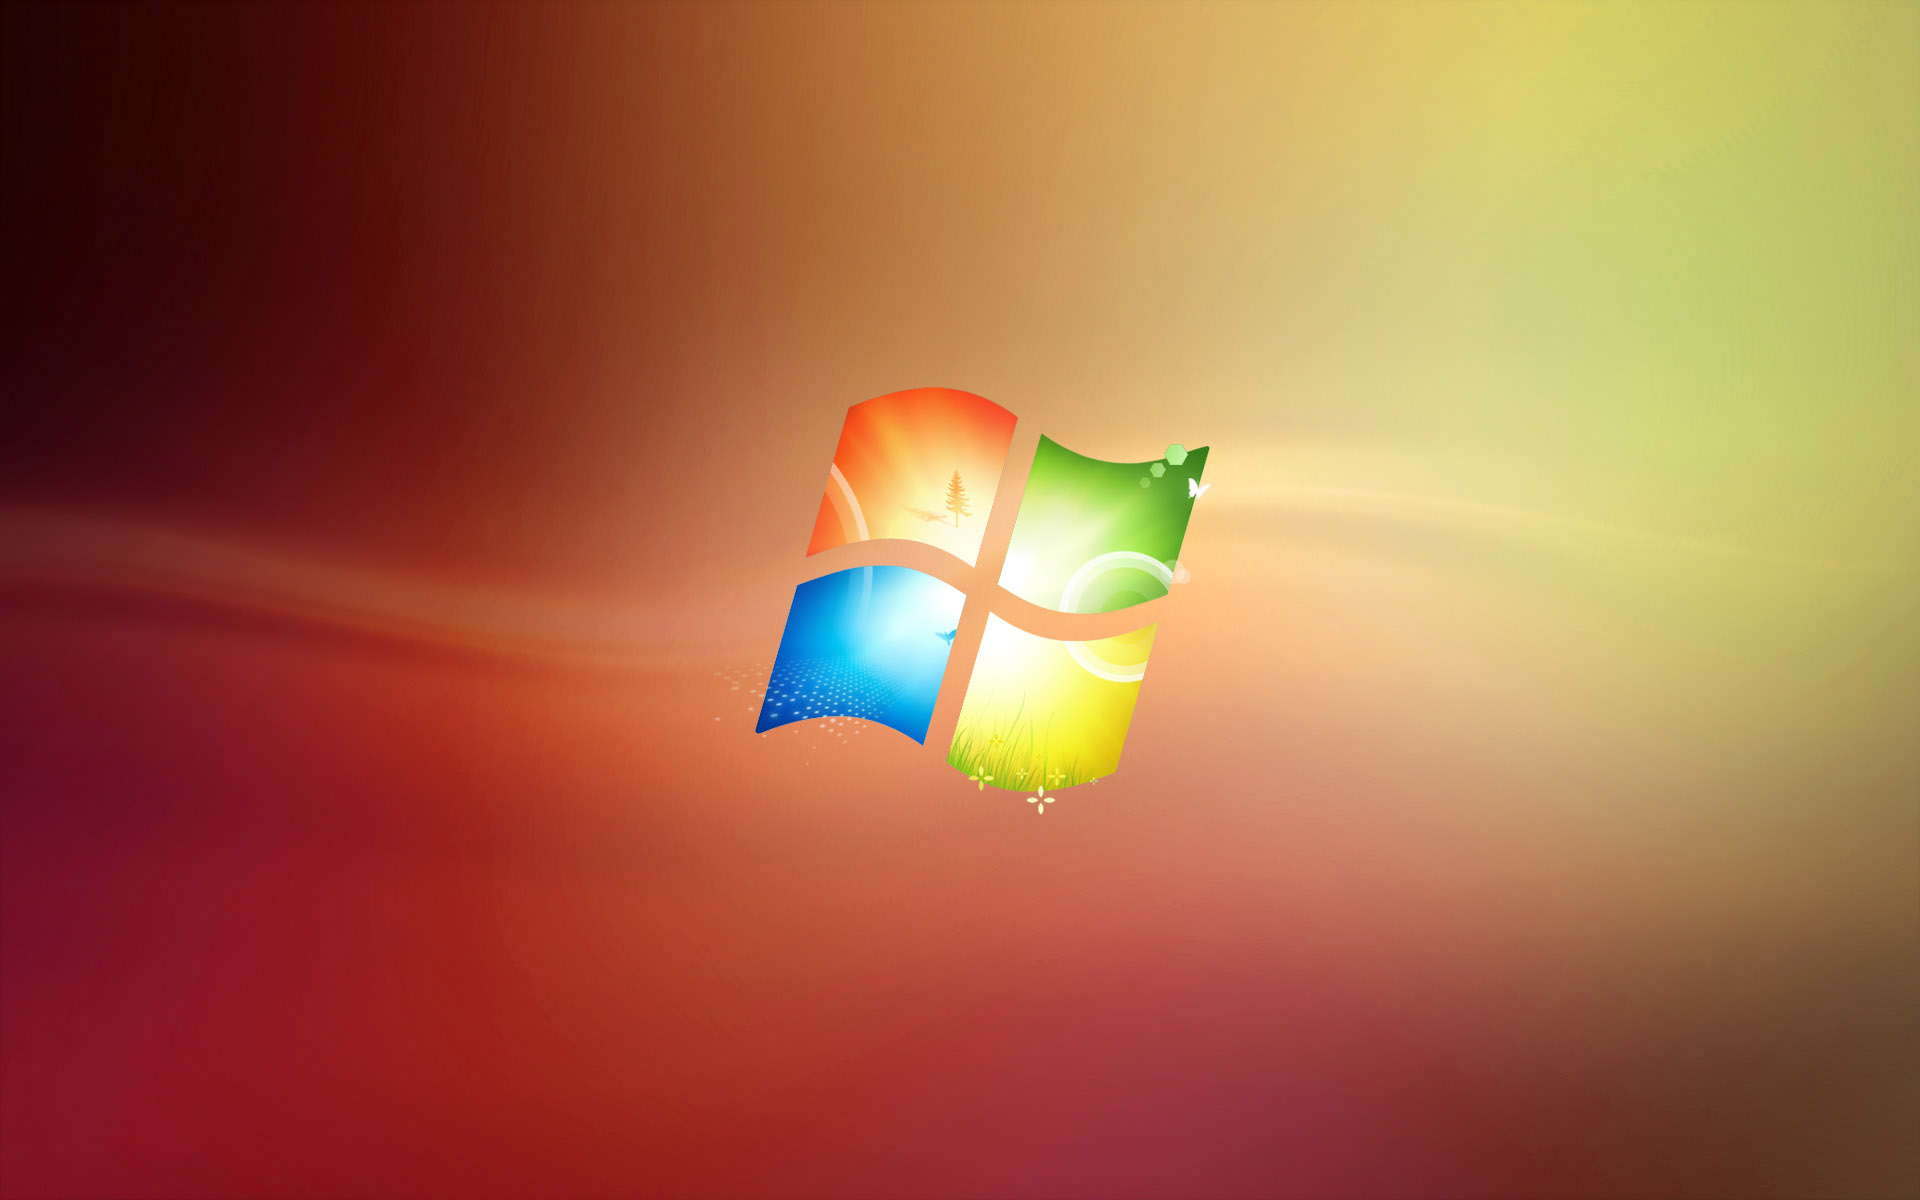 Скачать картинку Windows 7, Майкрософт, Технологии, Окна, Лого в телефон бесплатно.